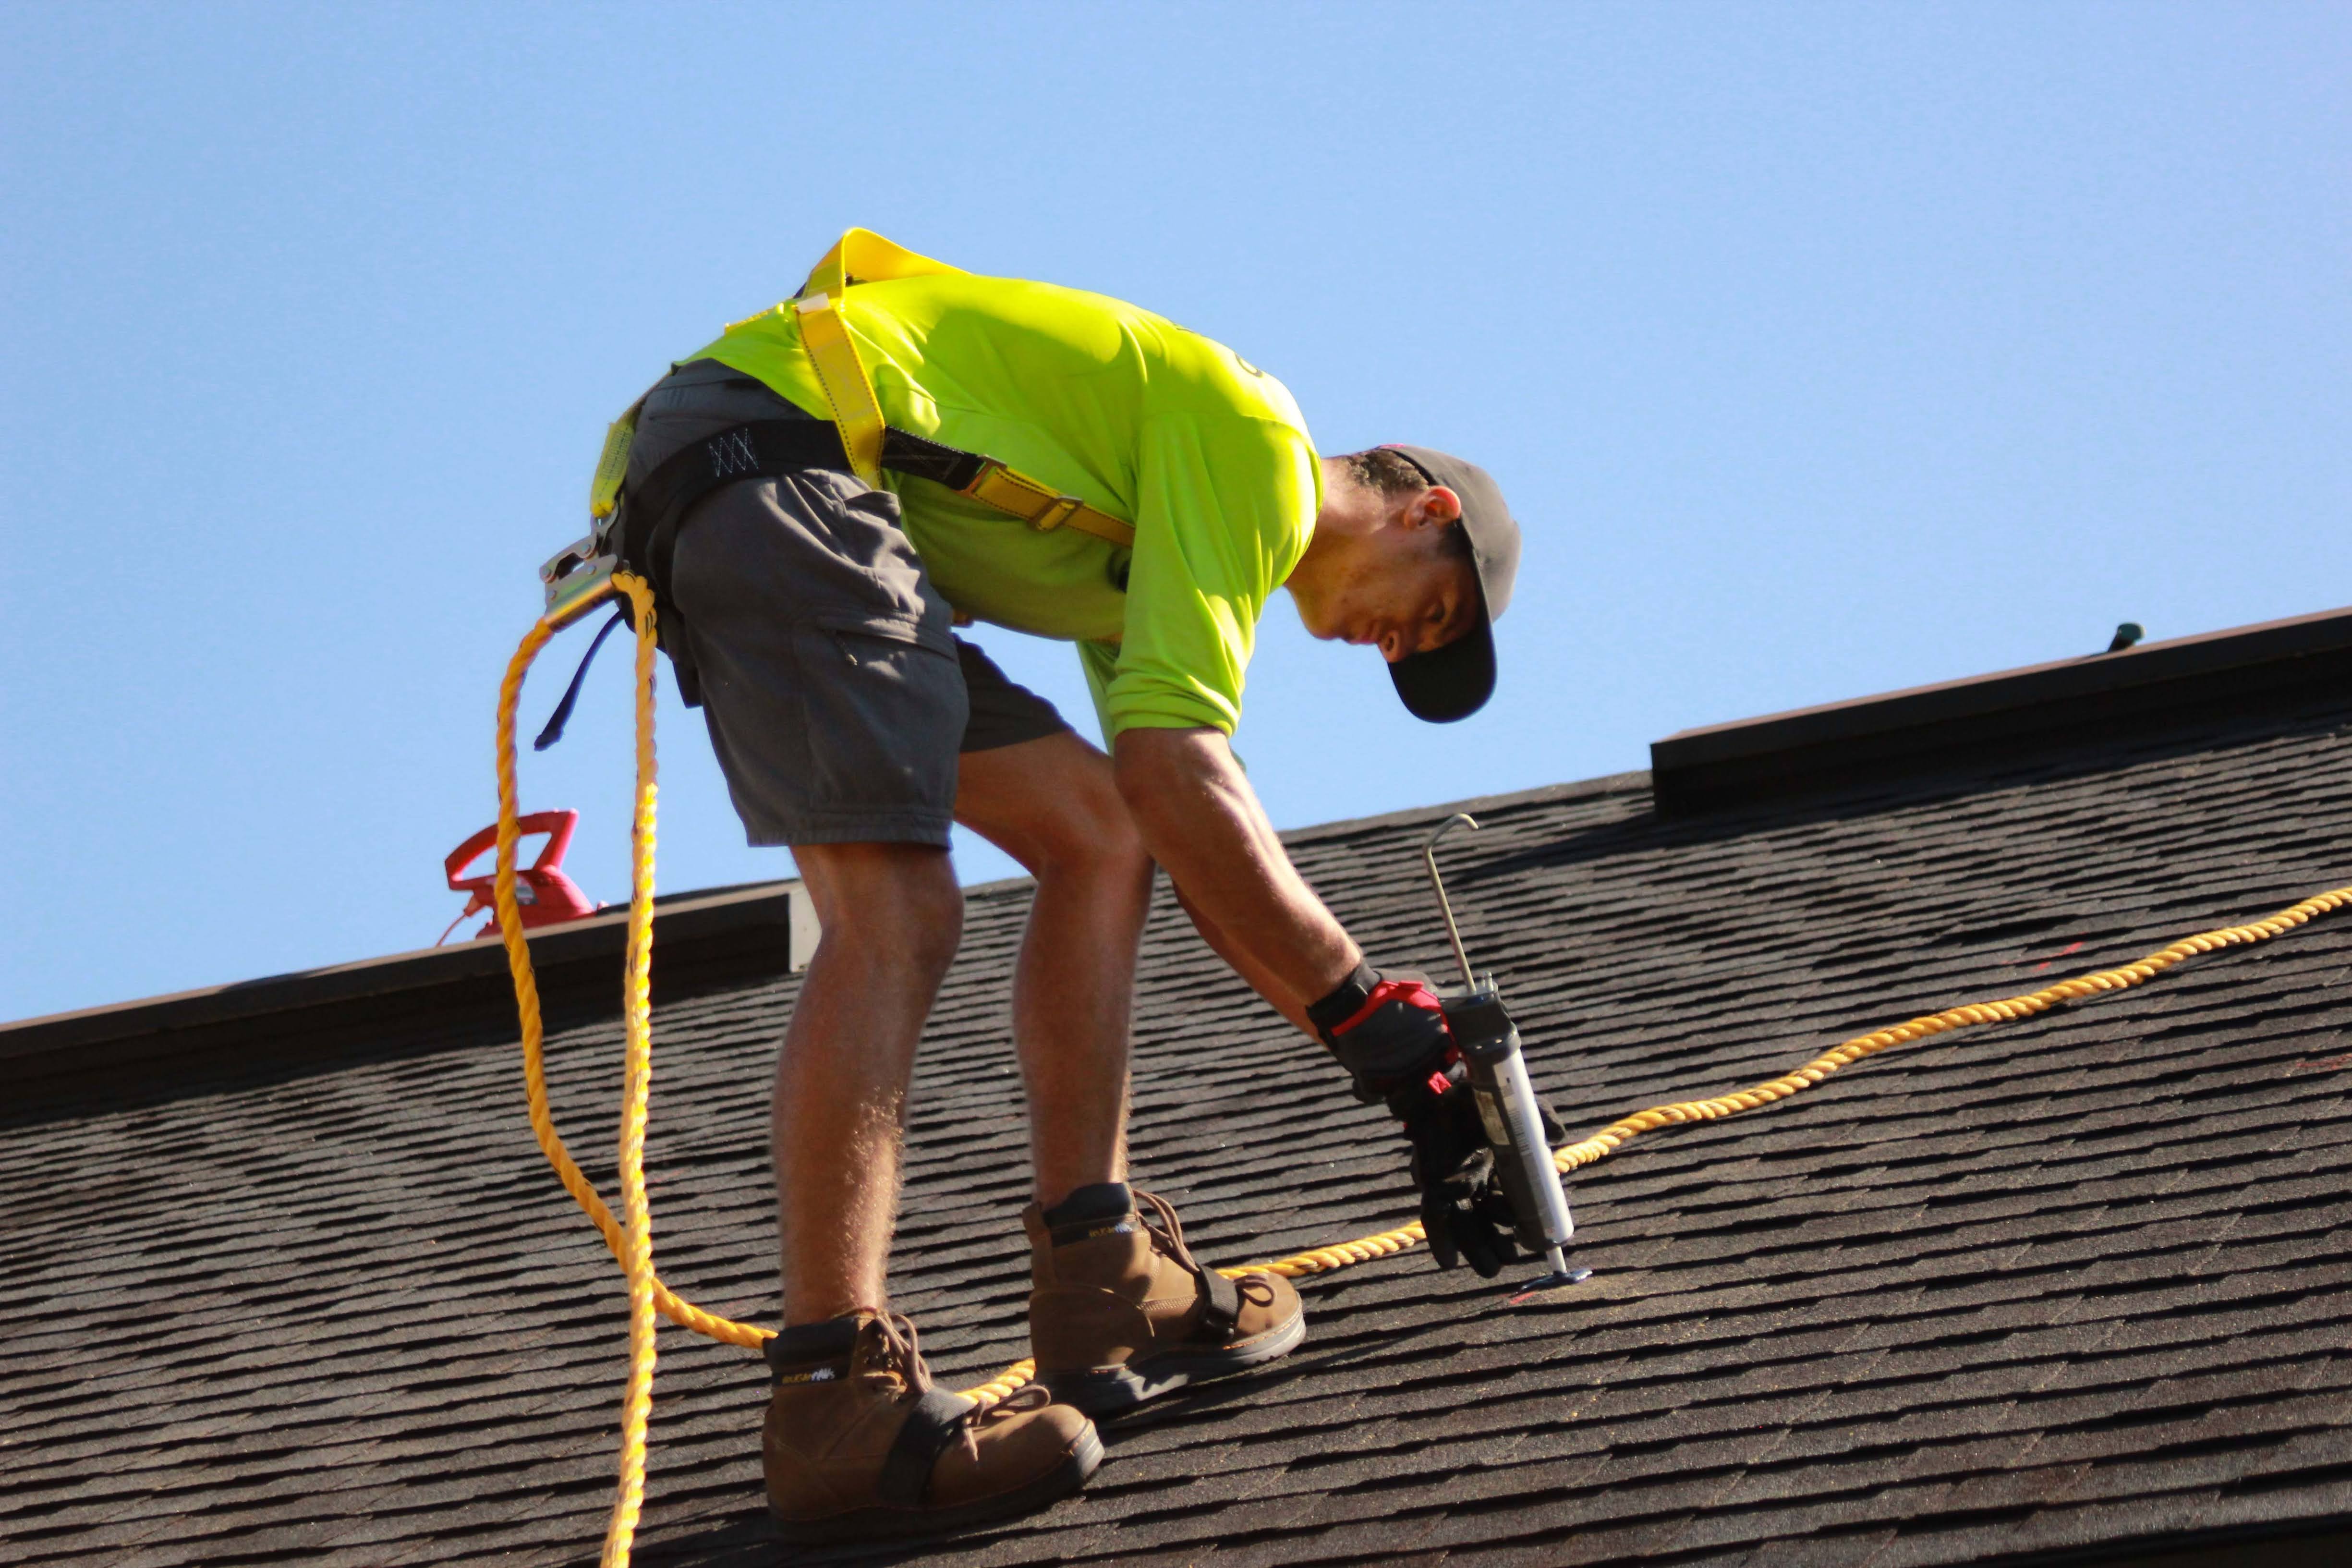 roofer installing asphalt shingles